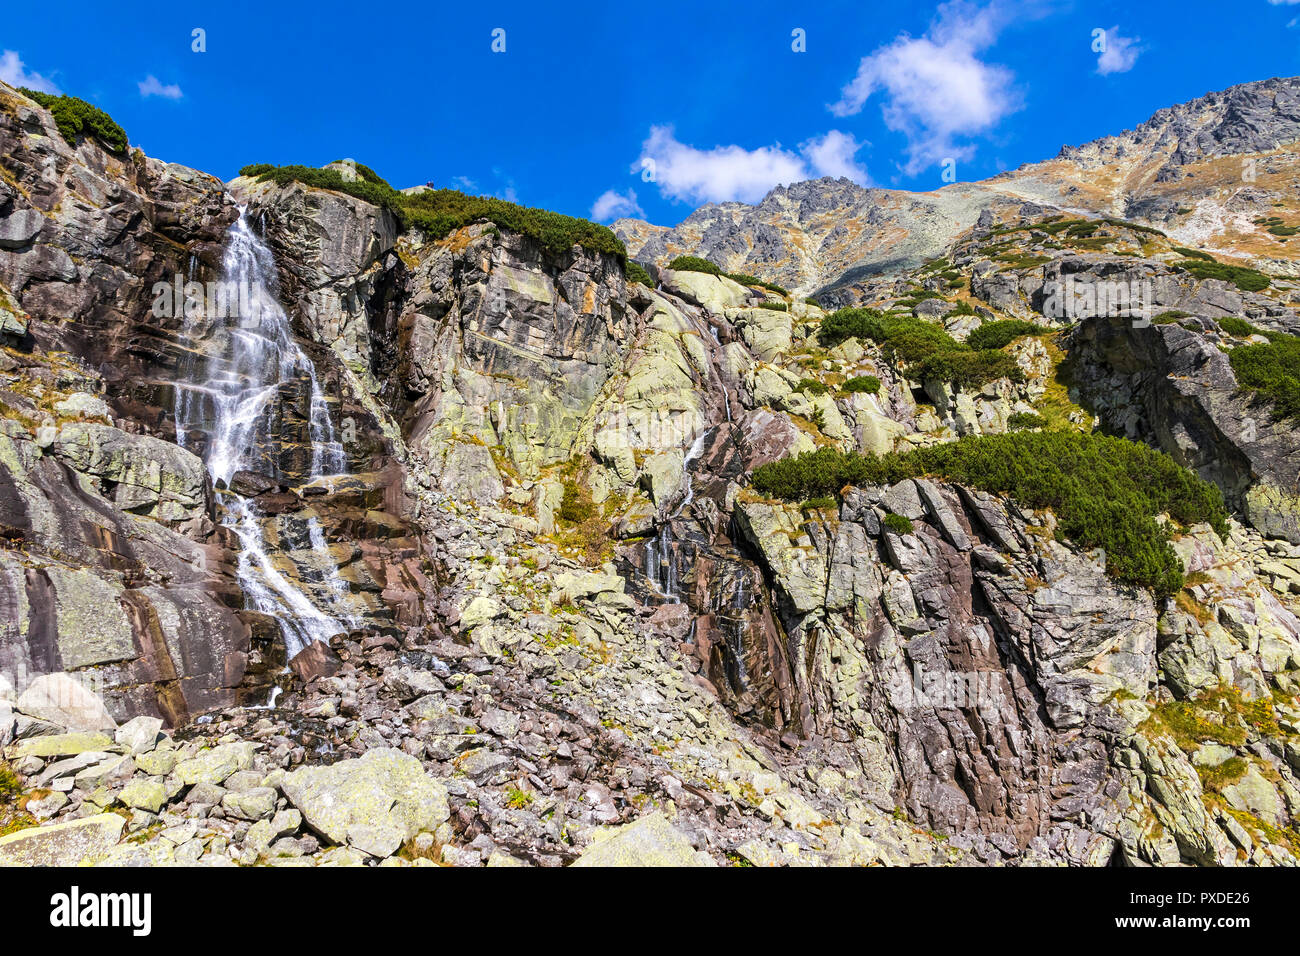 Escursionismo in Alti Tatra (Vysoke Tatry), Slovacchia. Skok cascata (slovacco: Vodopad Skok). 1789m. Una delle più belle cascate di Tatra. Th Foto Stock